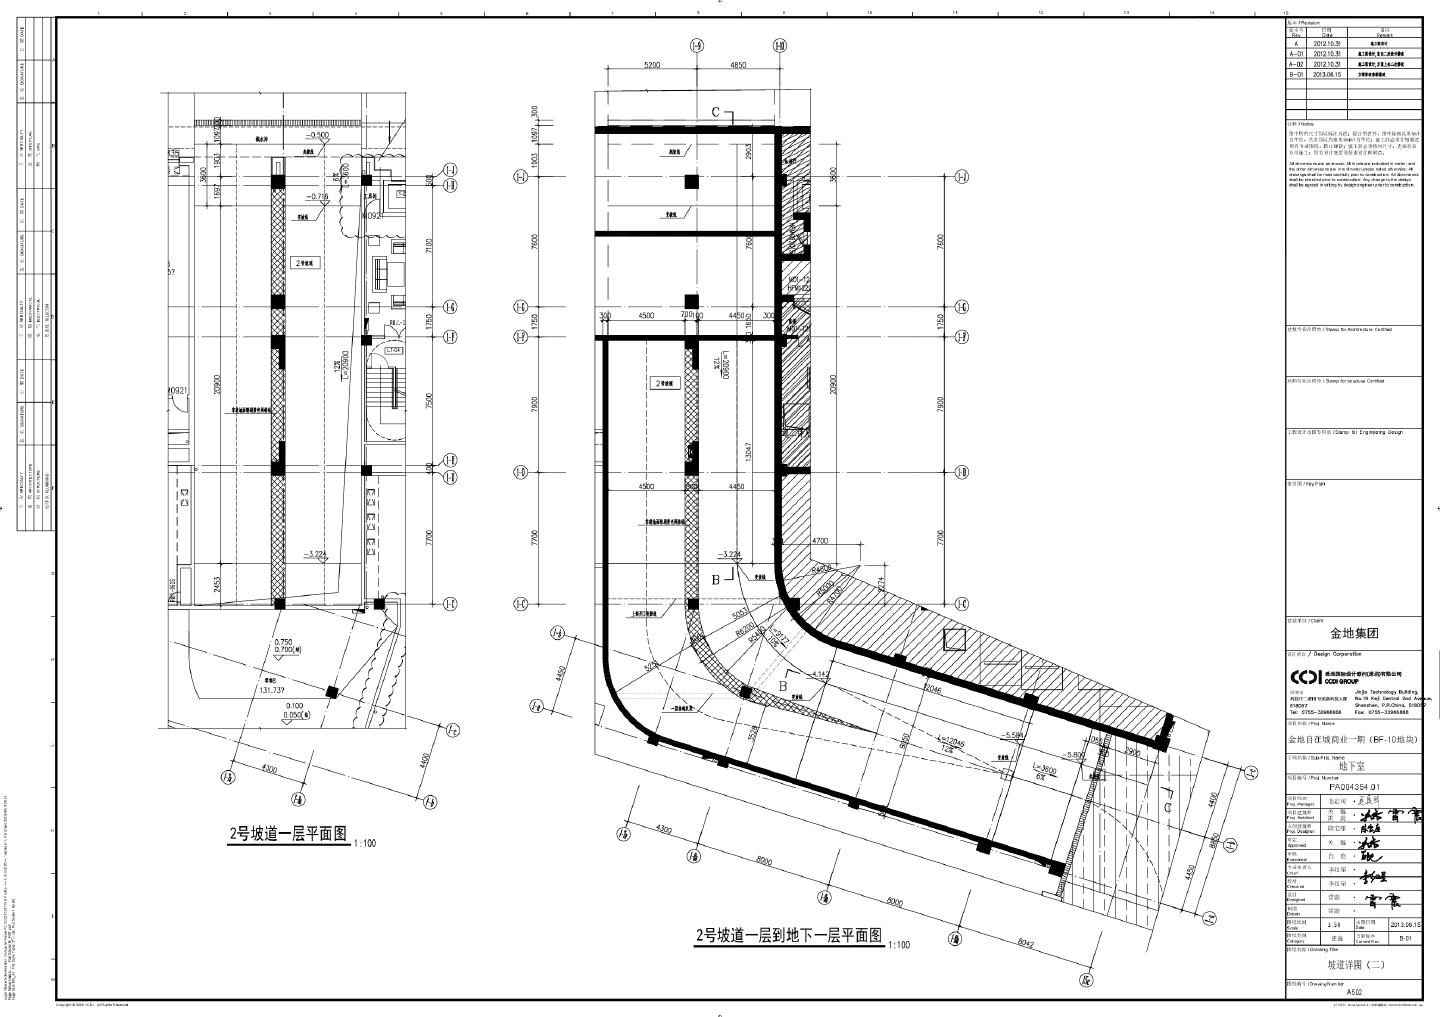 金地自在城商业一期（BF-10地块）地下室-坡道详图CAD图